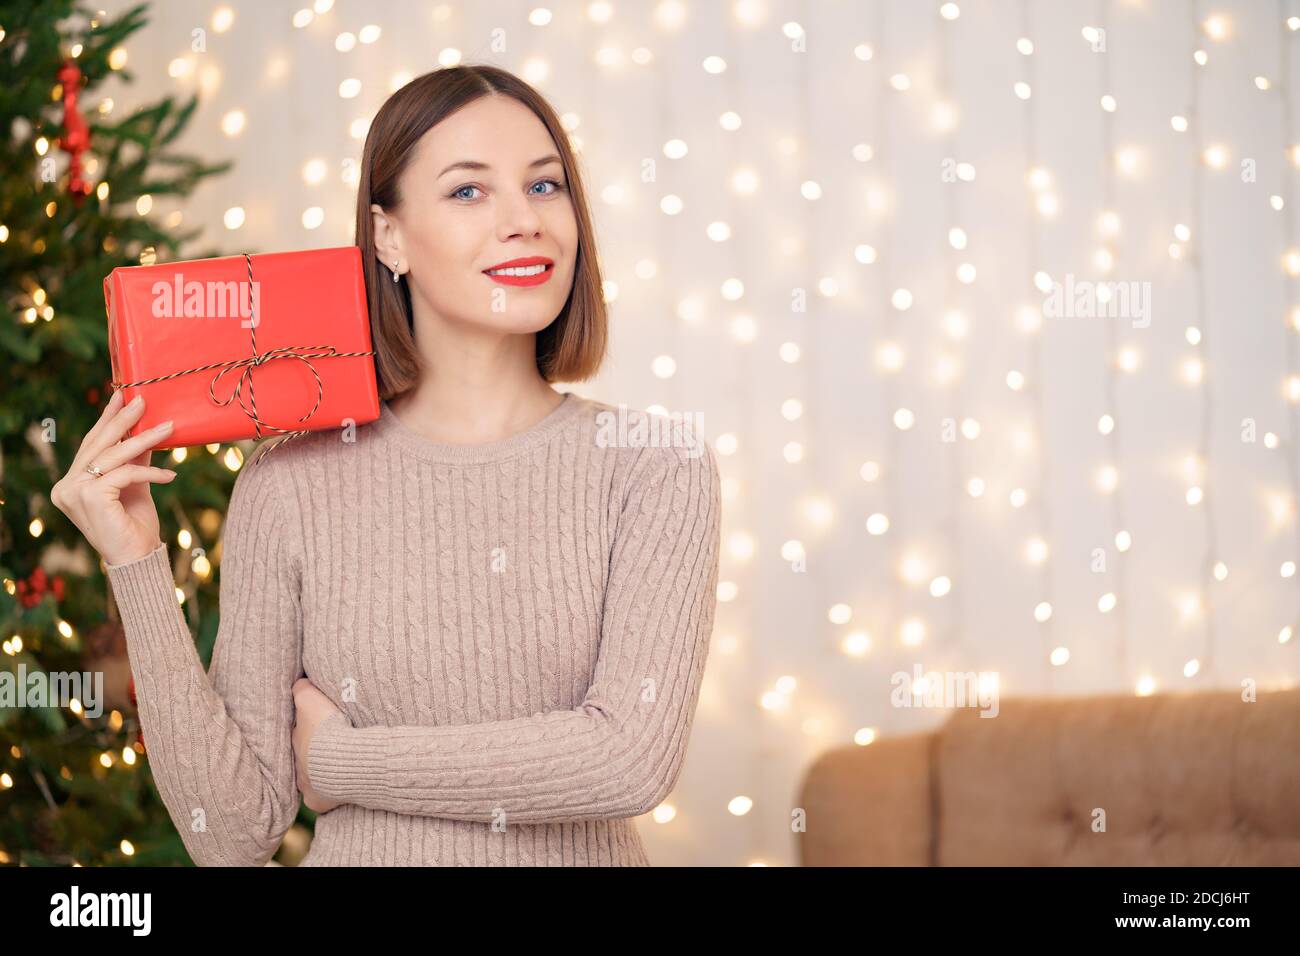 Portrait de jeune femme heureuse lèvres rouges regardant l'appareil photo tenant une boîte cadeau emballée. Gros plan la femme satisfaite a reçu la boîte actuelle. Noël festif Banque D'Images